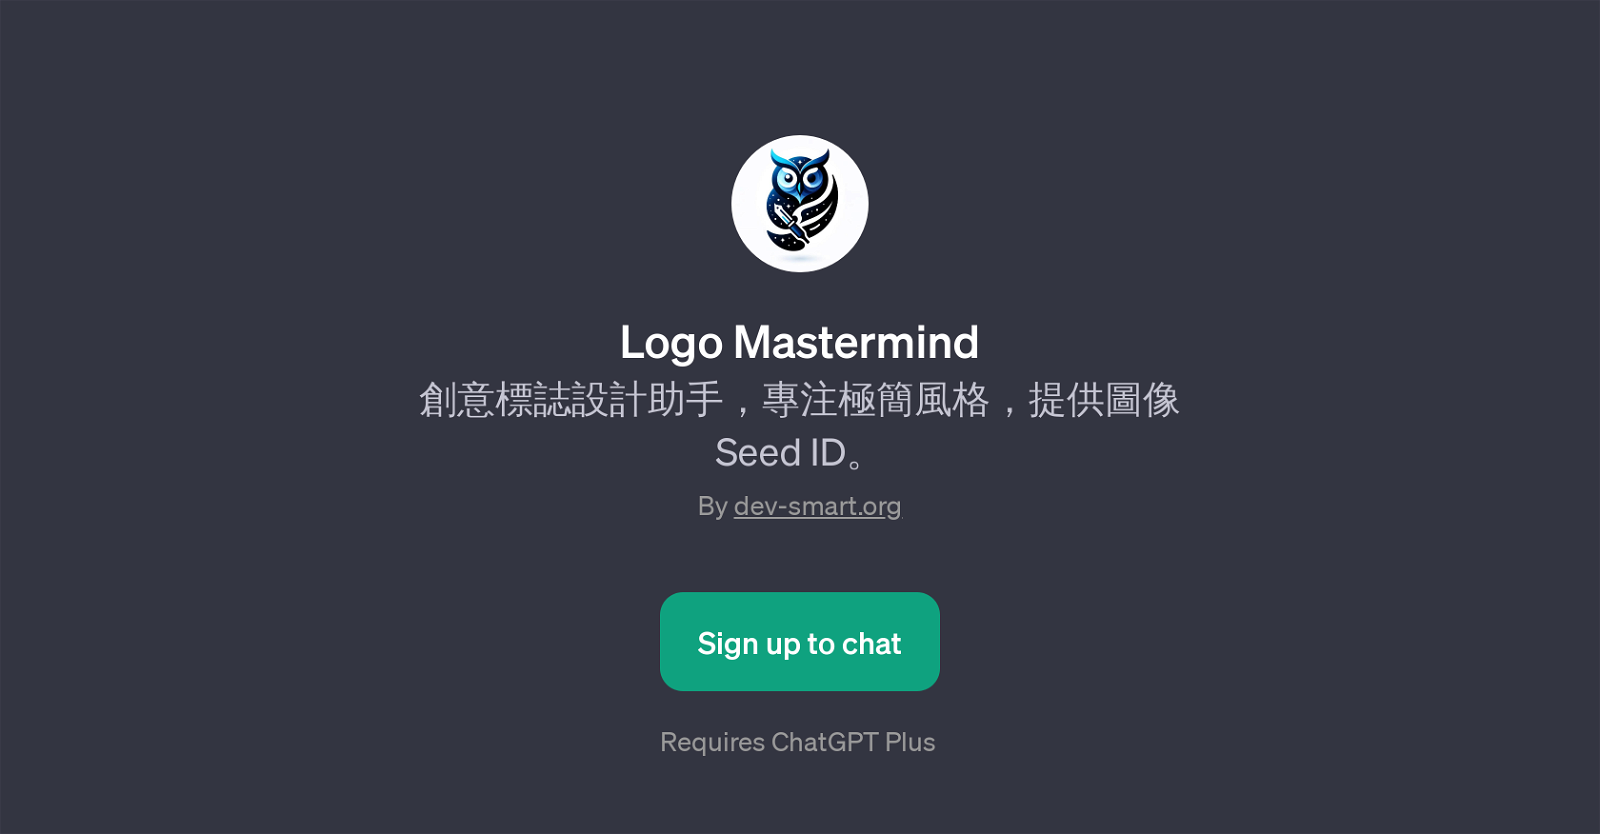 Logo Mastermind website